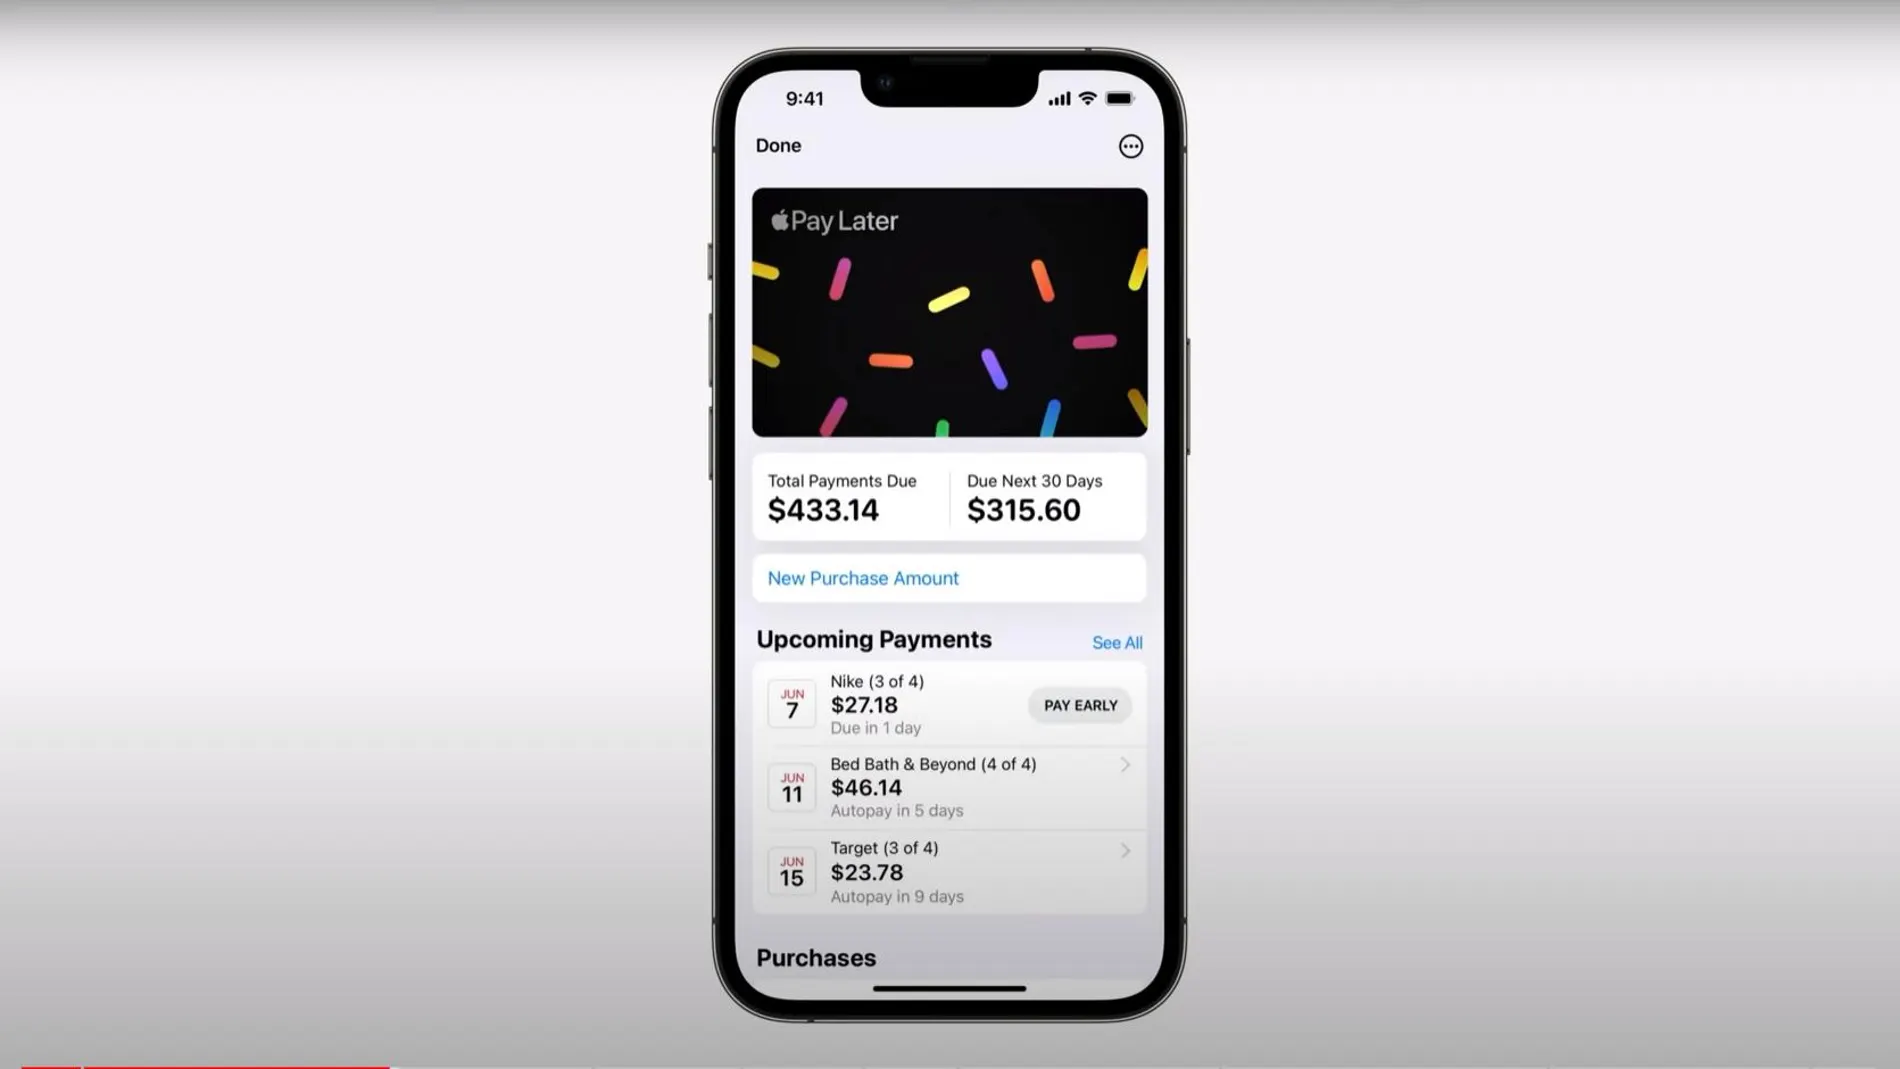 Imagen del nuevo servicio Apple Pay Later correspondiente a la presentación realizada en la conferencia de desarrolladores de Apple el pasado lunes.